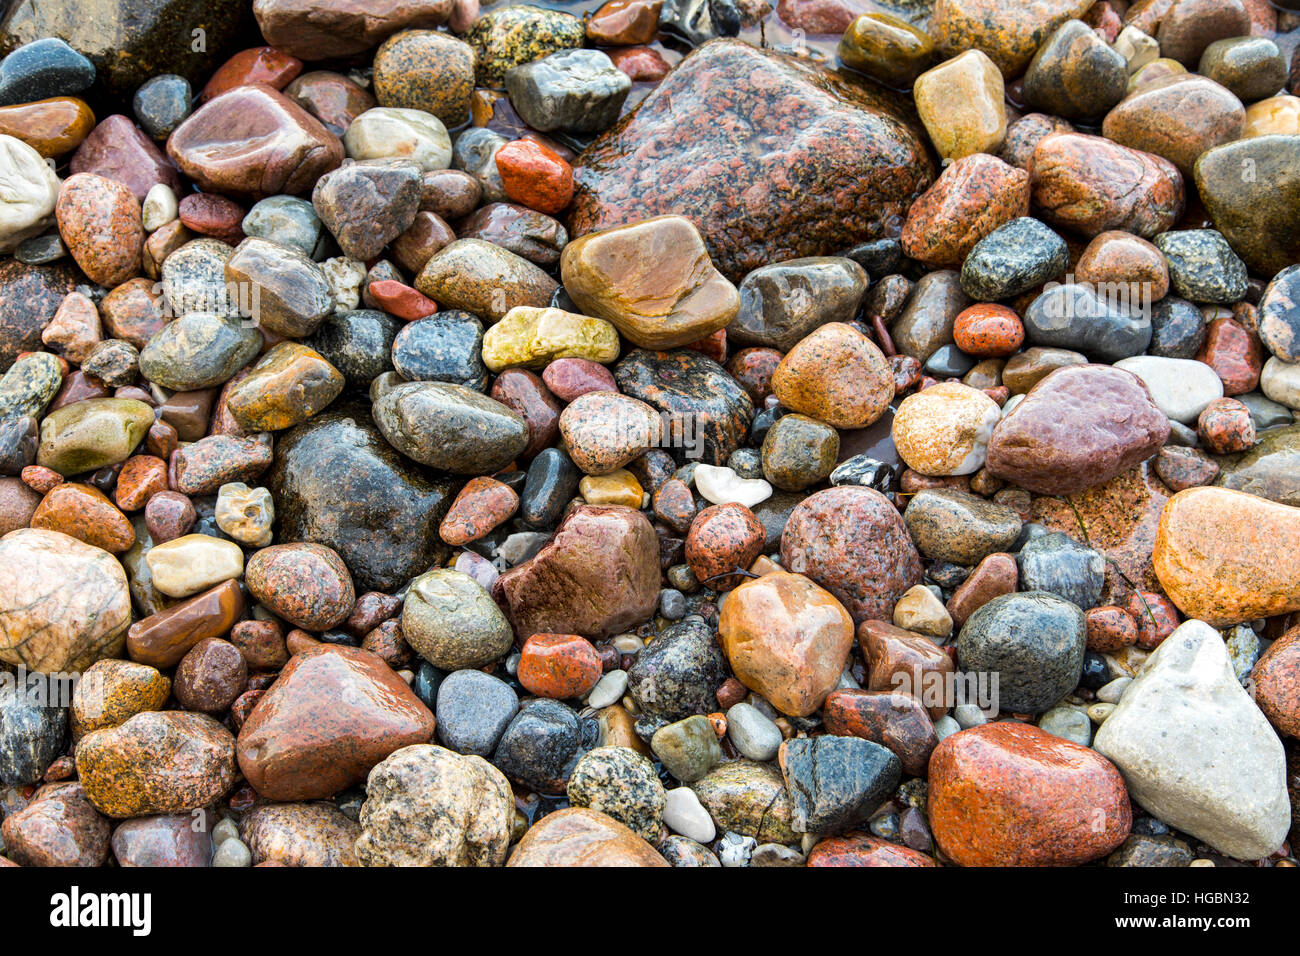 Beaucoup de grandes et petites pierres, cailloux sur une plage, côte de la mer Baltique, l'île de Rügen, Allemagne Banque D'Images